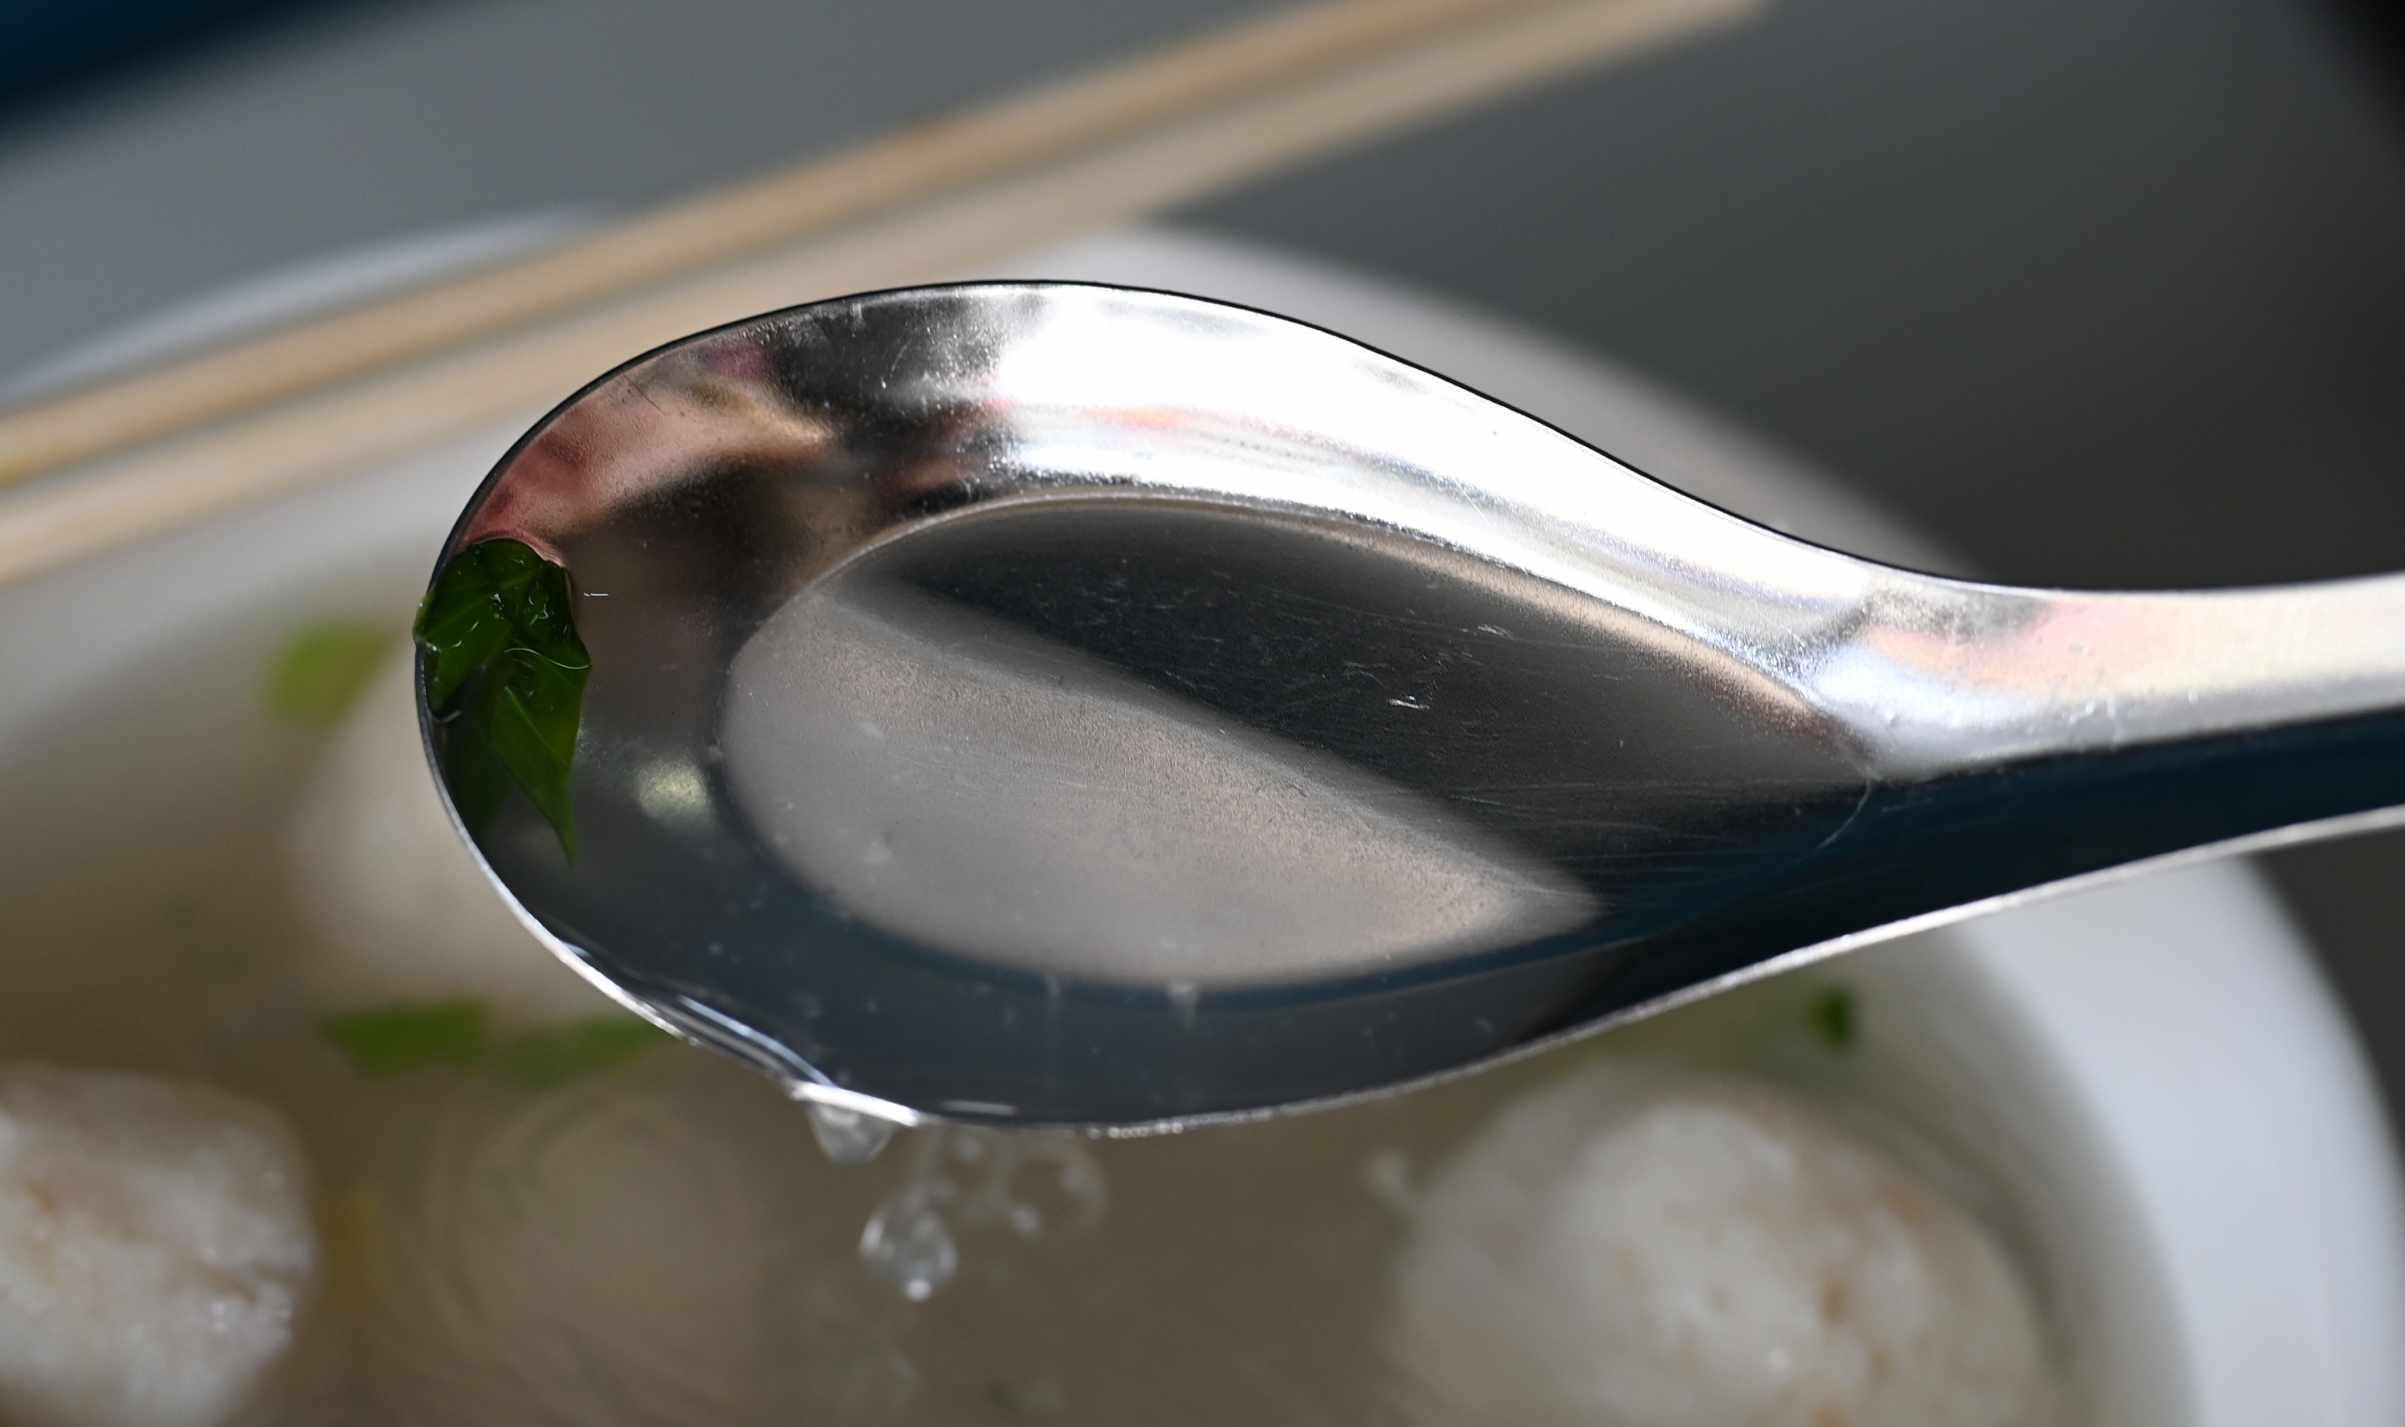 社子島魚丸湯, 社子島魚丸湯評價, 社子島美食